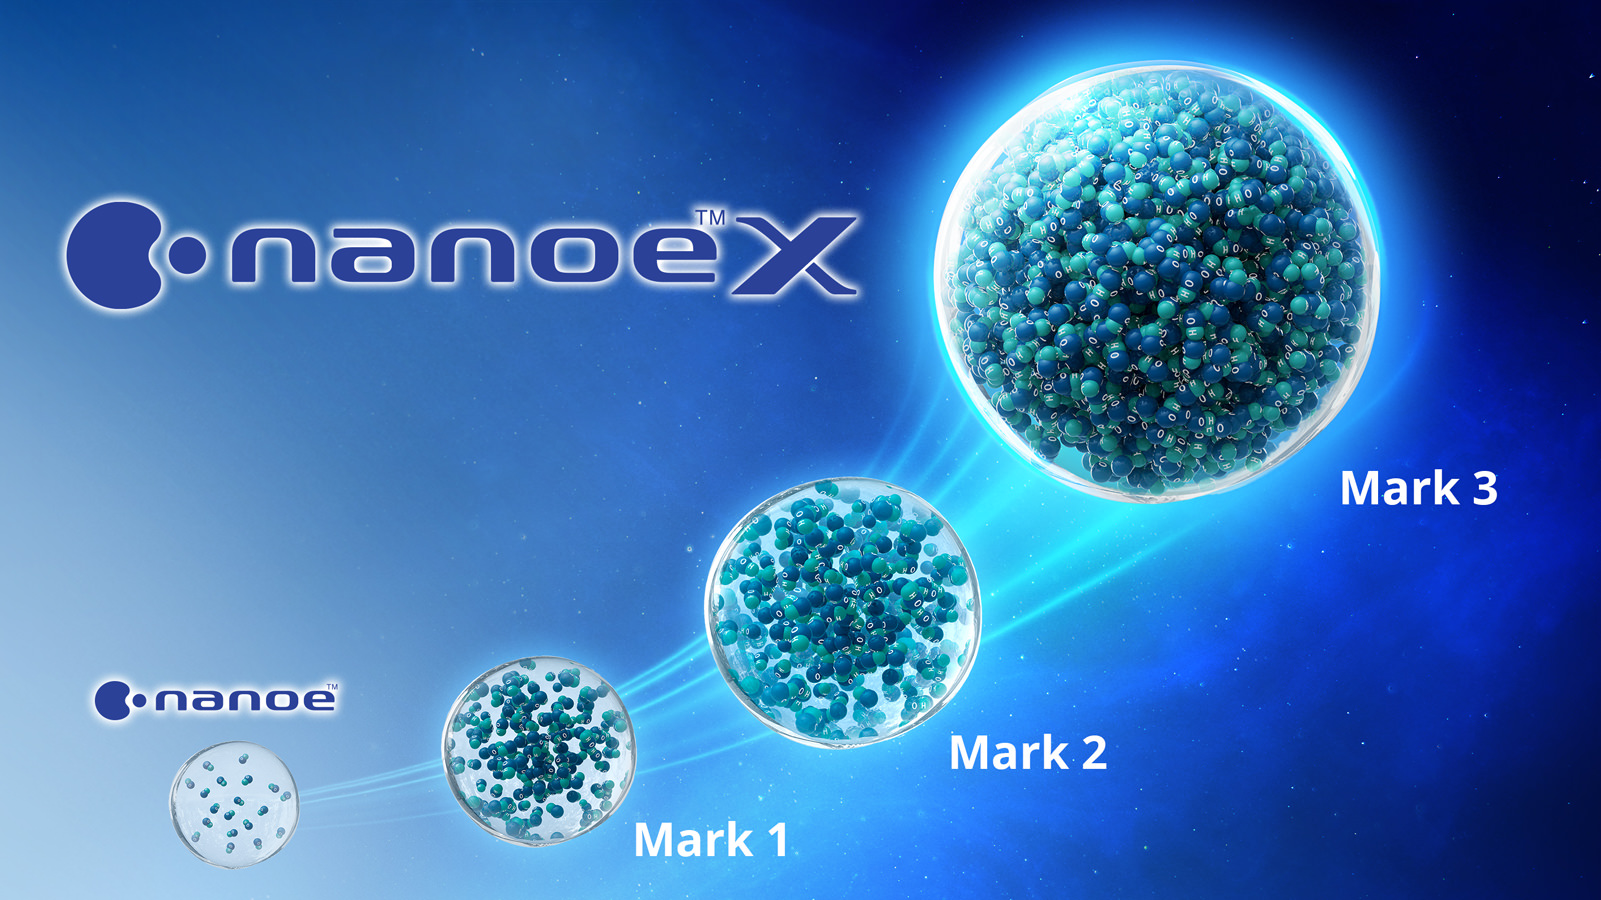 วิวัฒนาการของ nanoe™